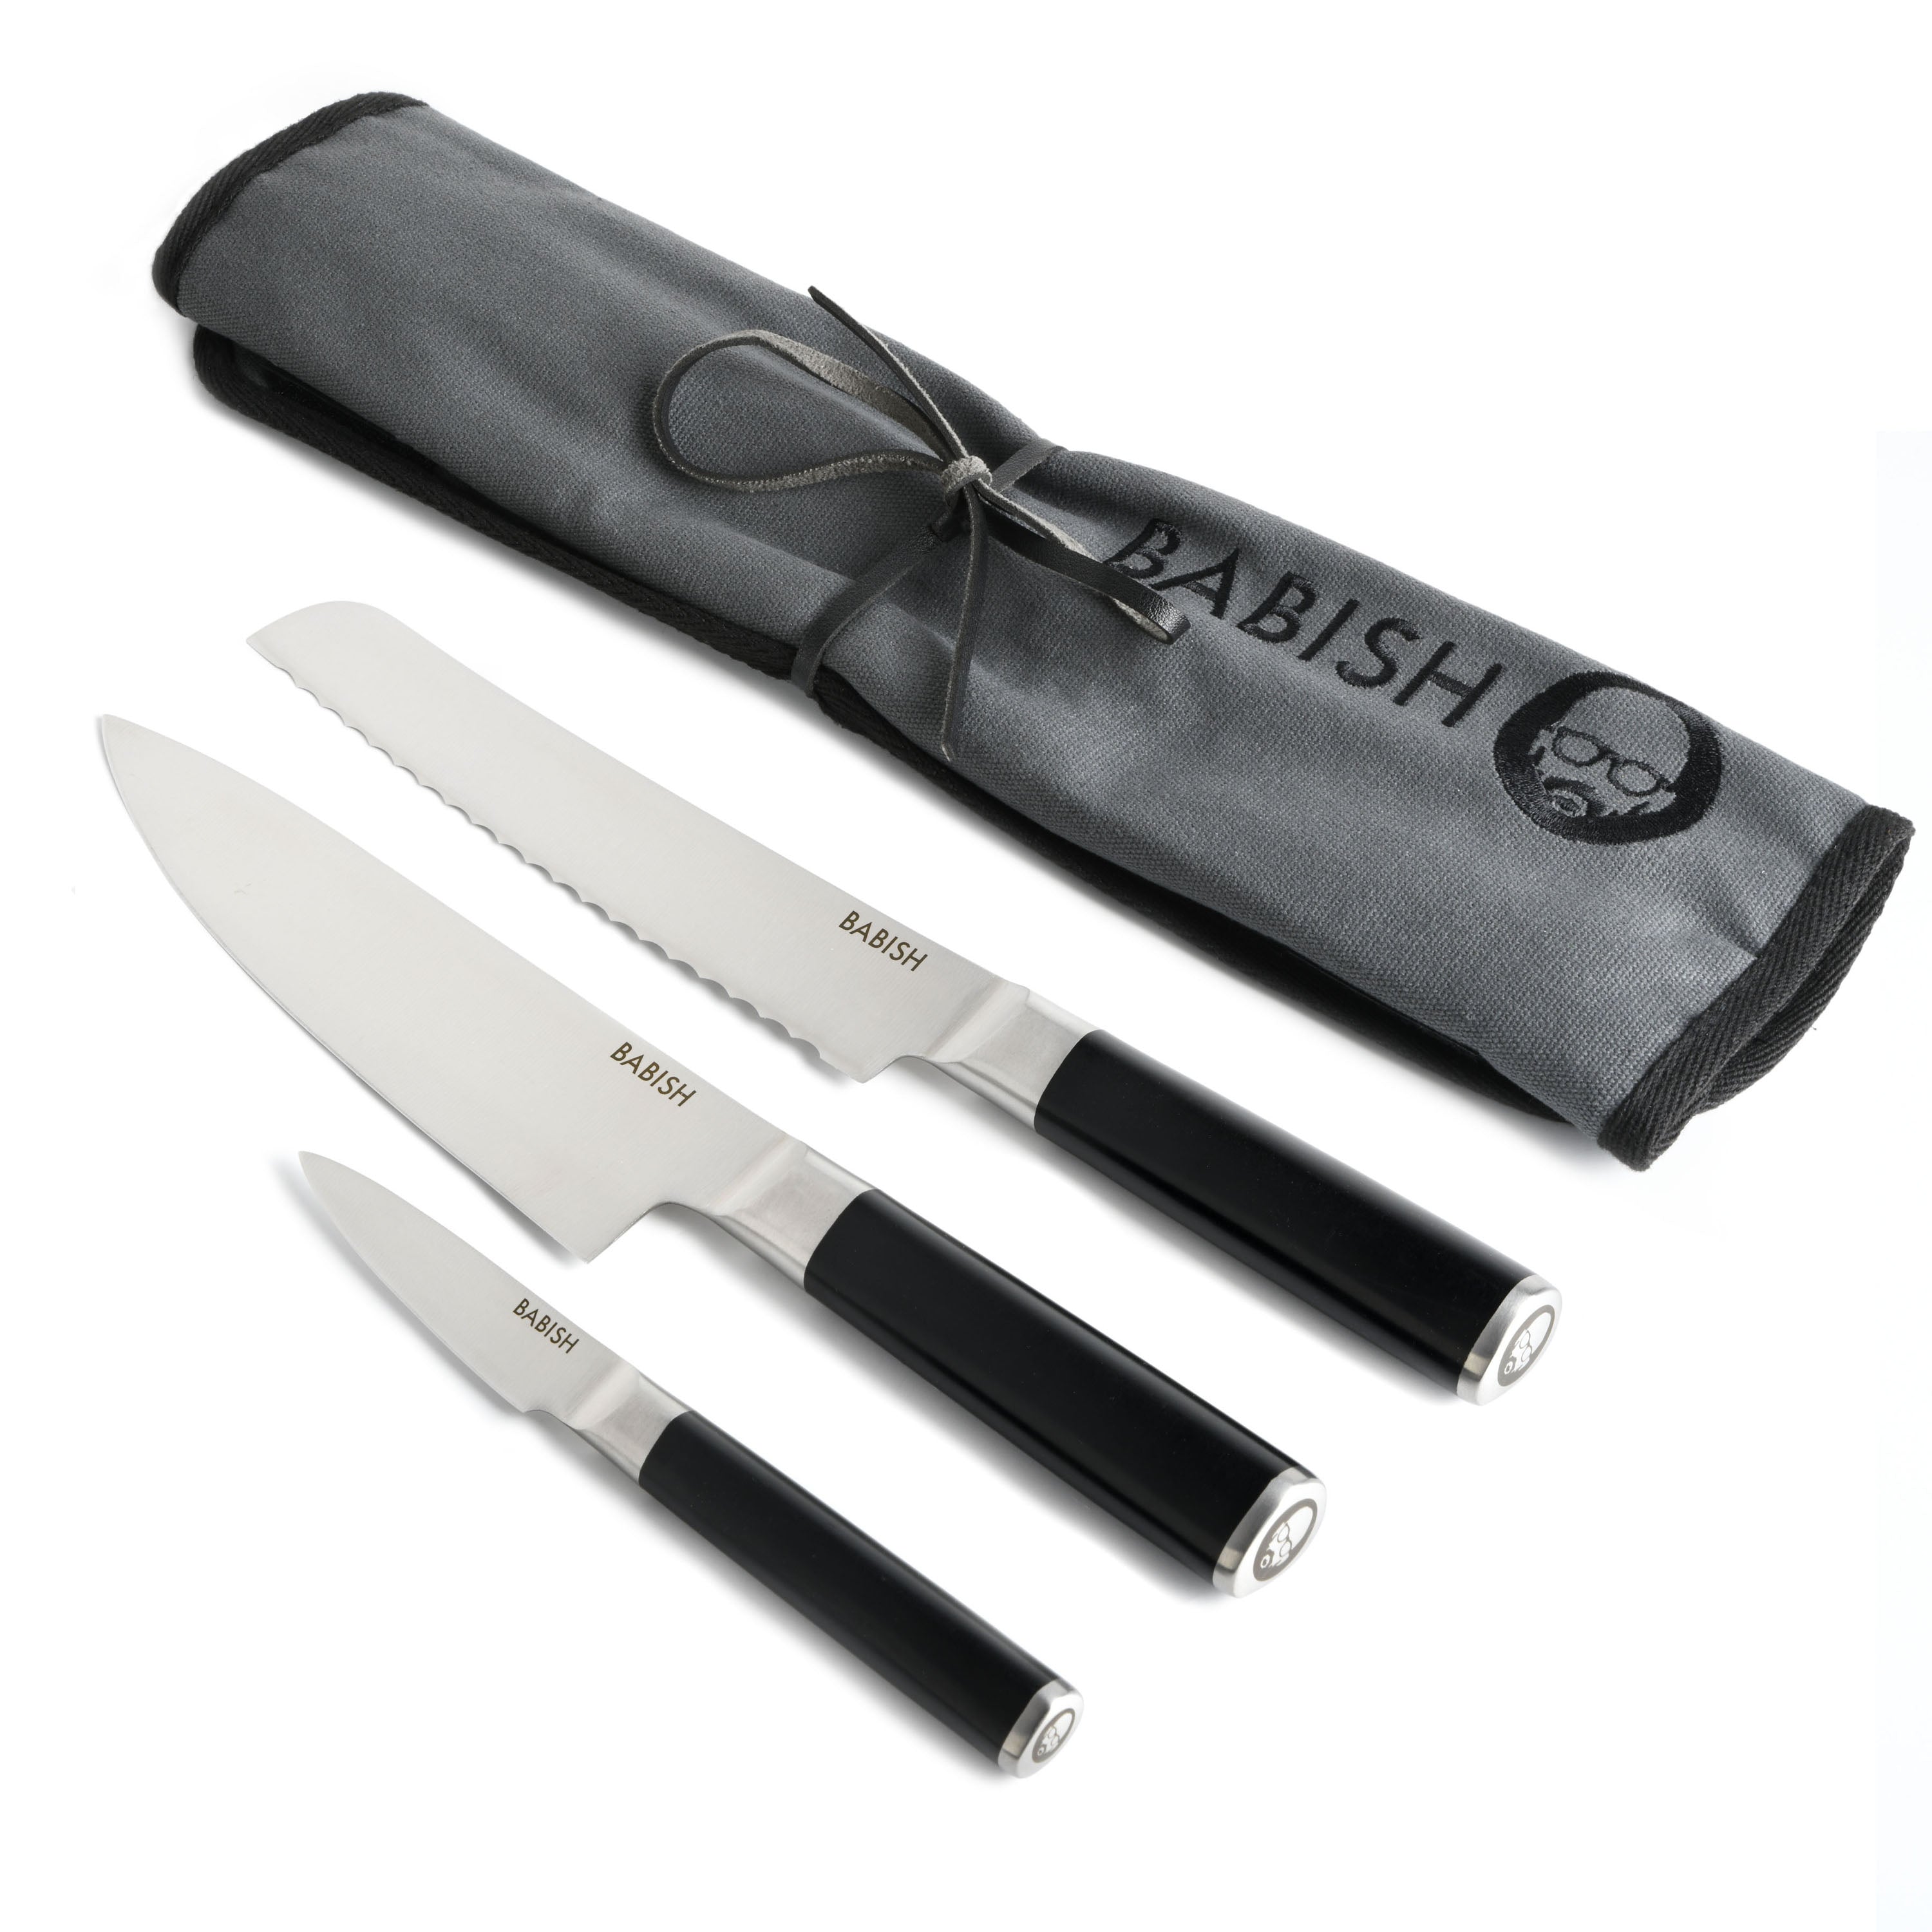 Babish 6.5 Santoku Knife Review #productreviews #babish #santokuknife 